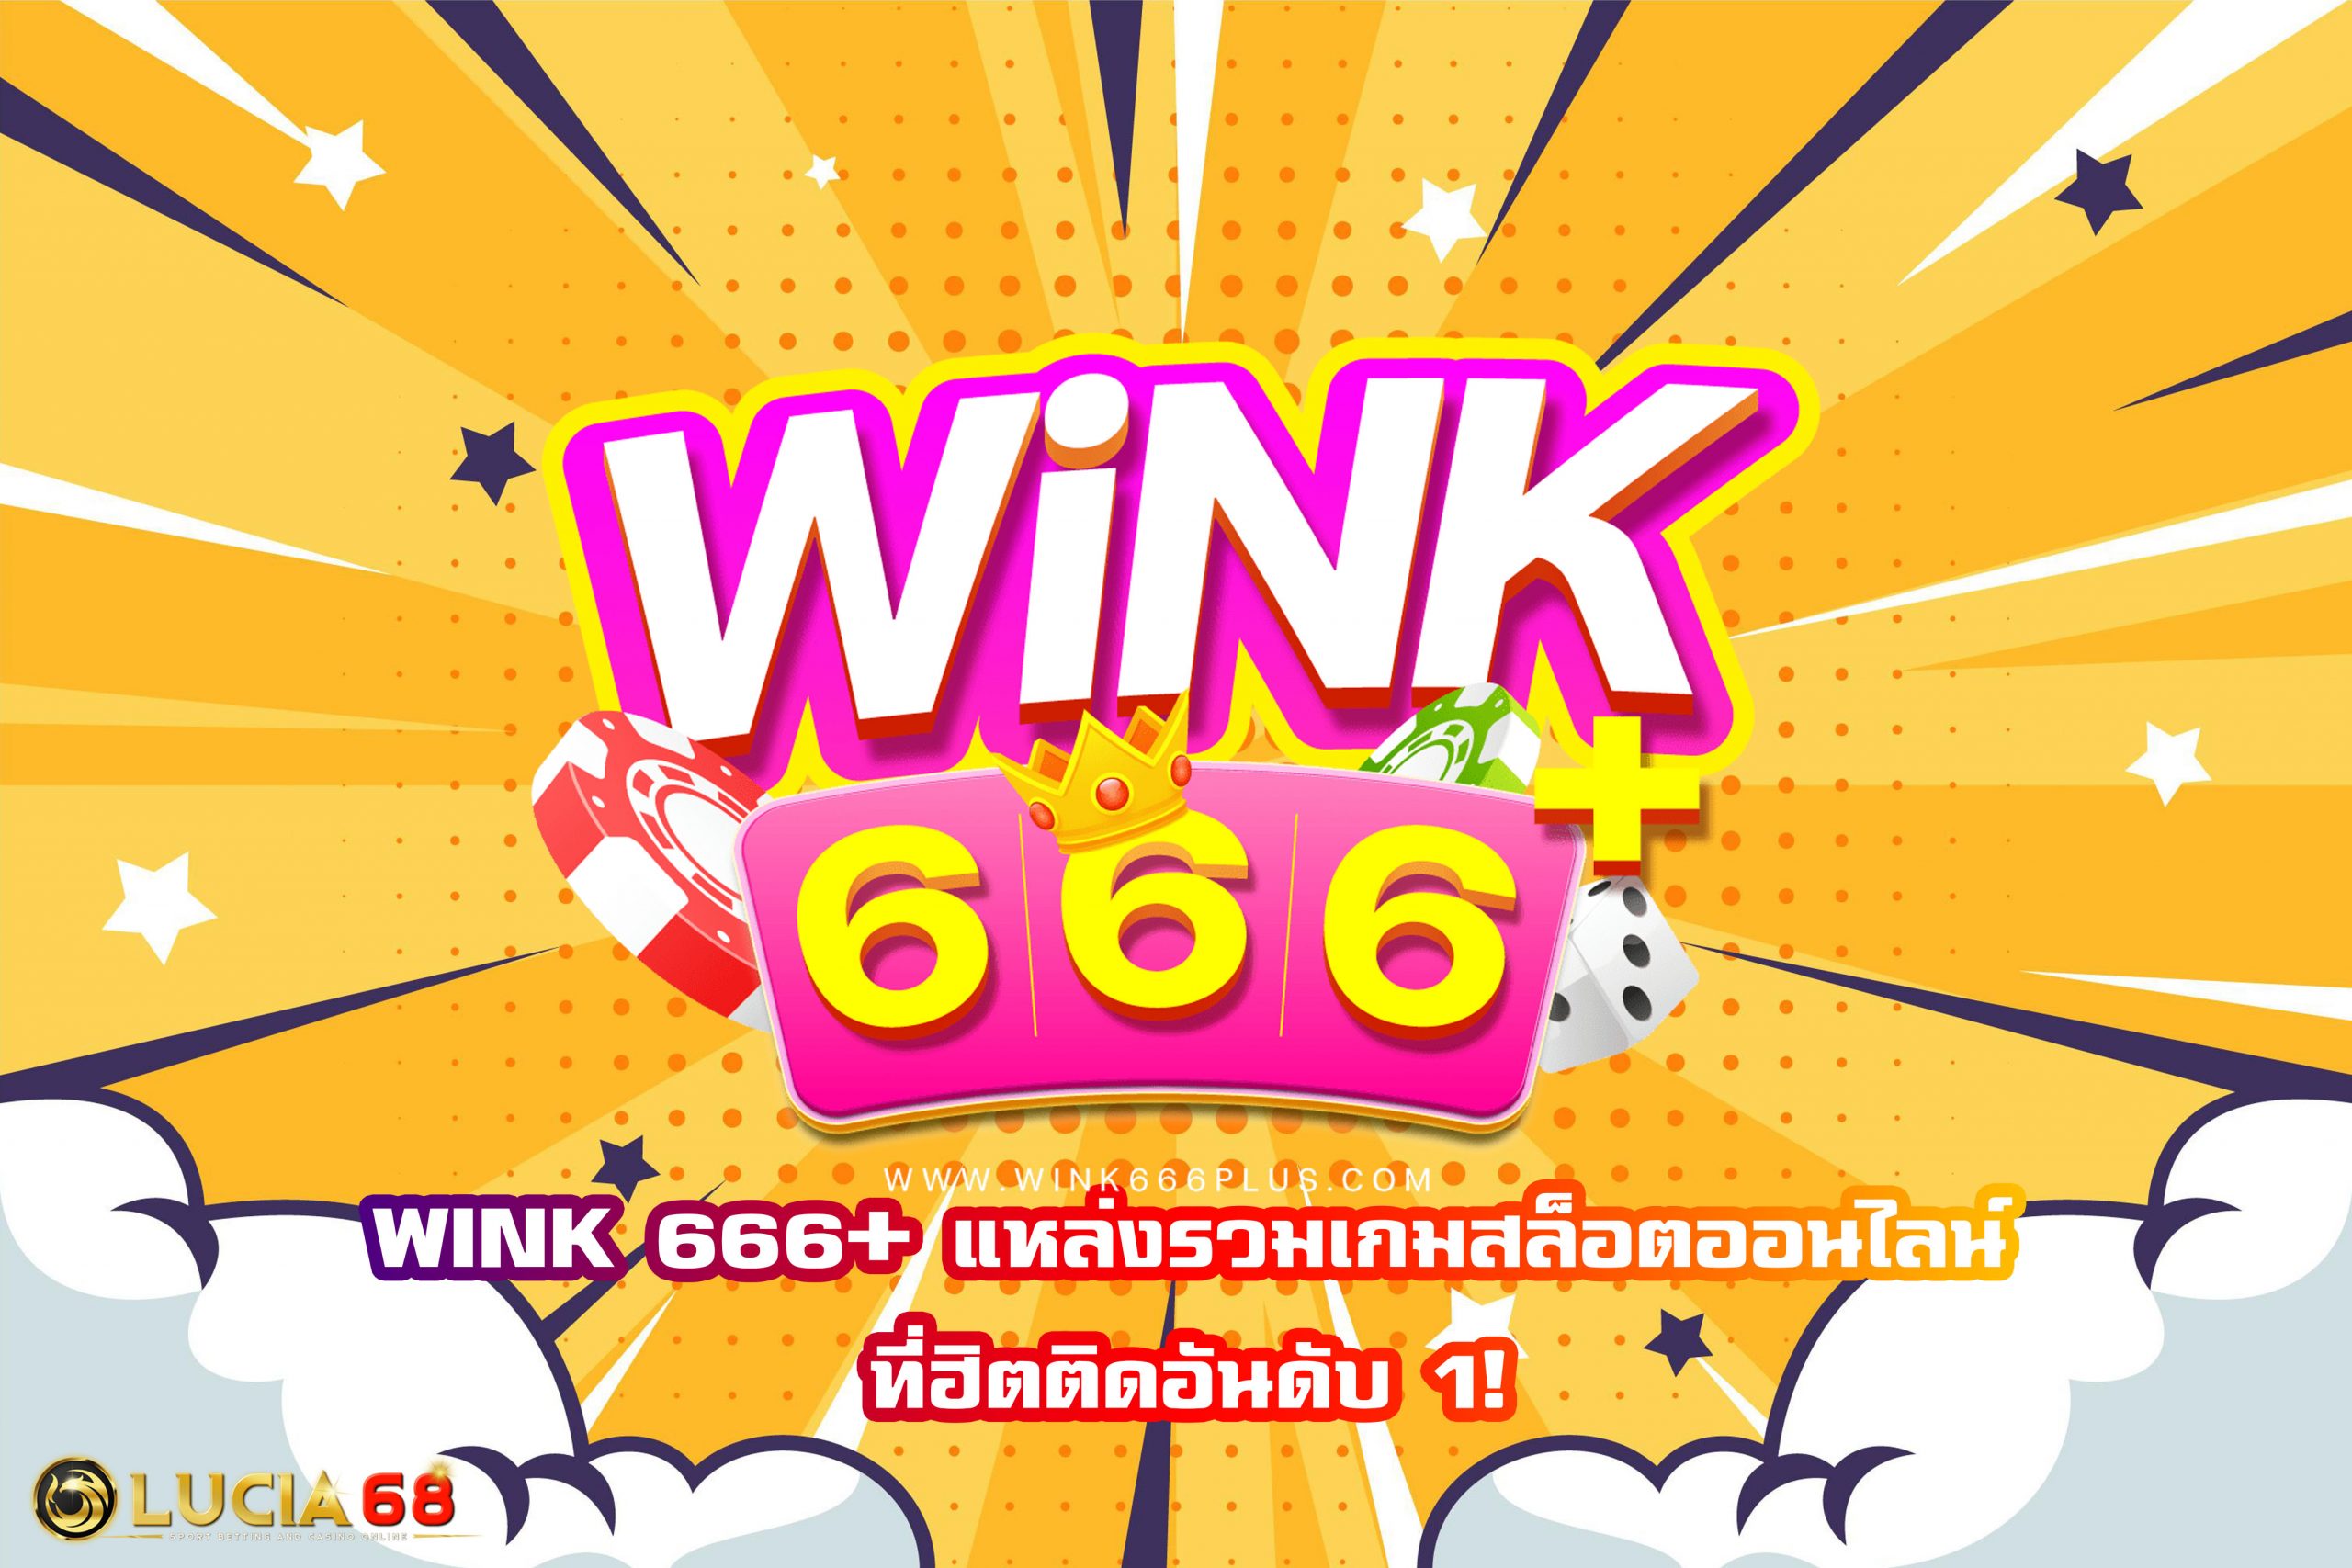 WINK 666+ แหล่งรวมเกมสล็อตออนไลน์ที่ฮิตติดอันดับ 1!